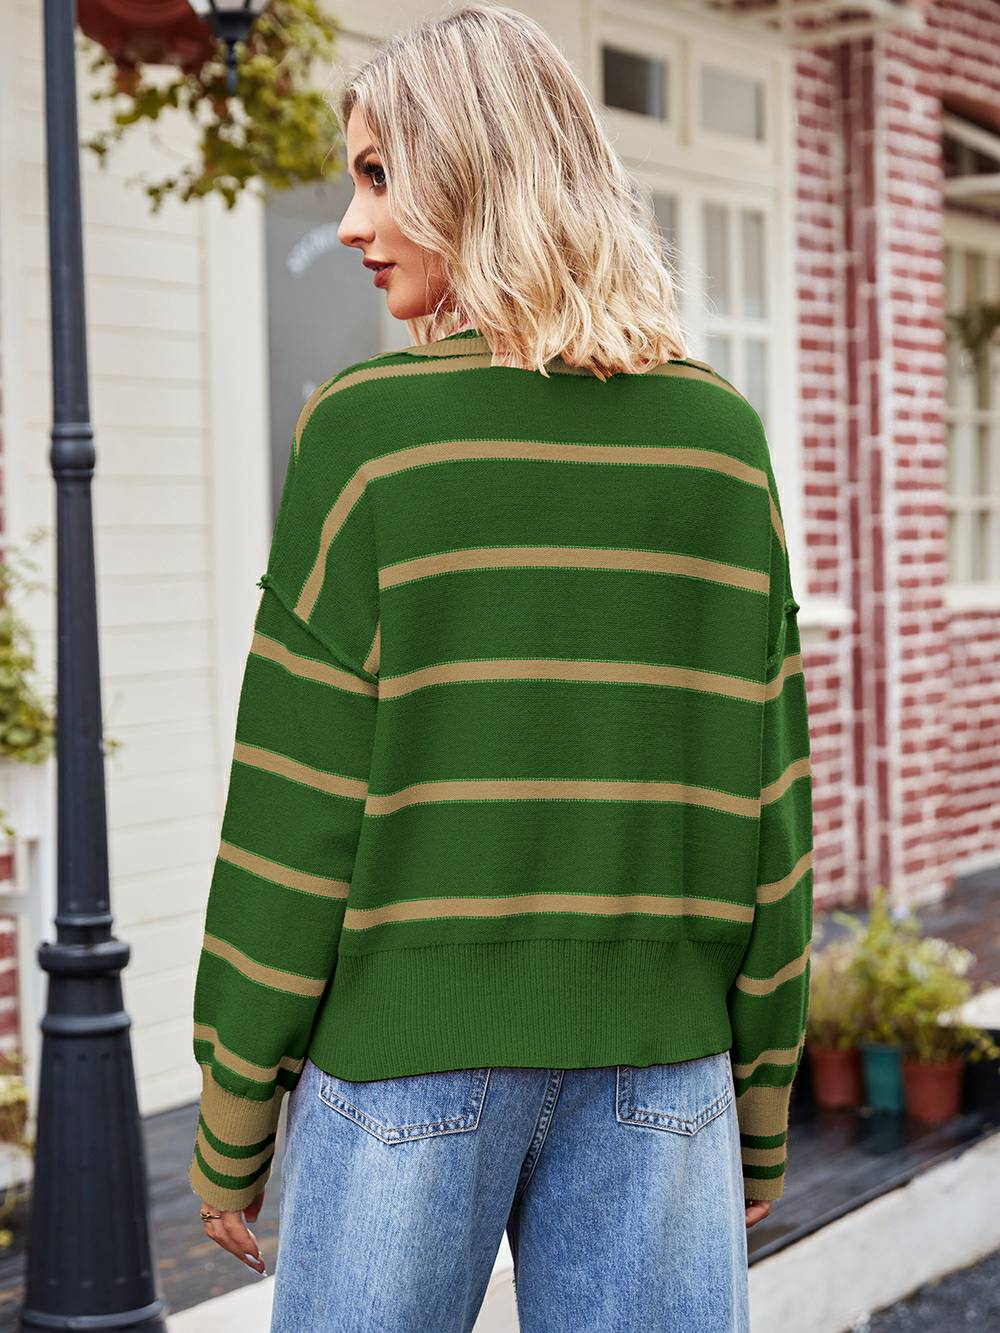 Modesch gesträifte Patchwork Sweater